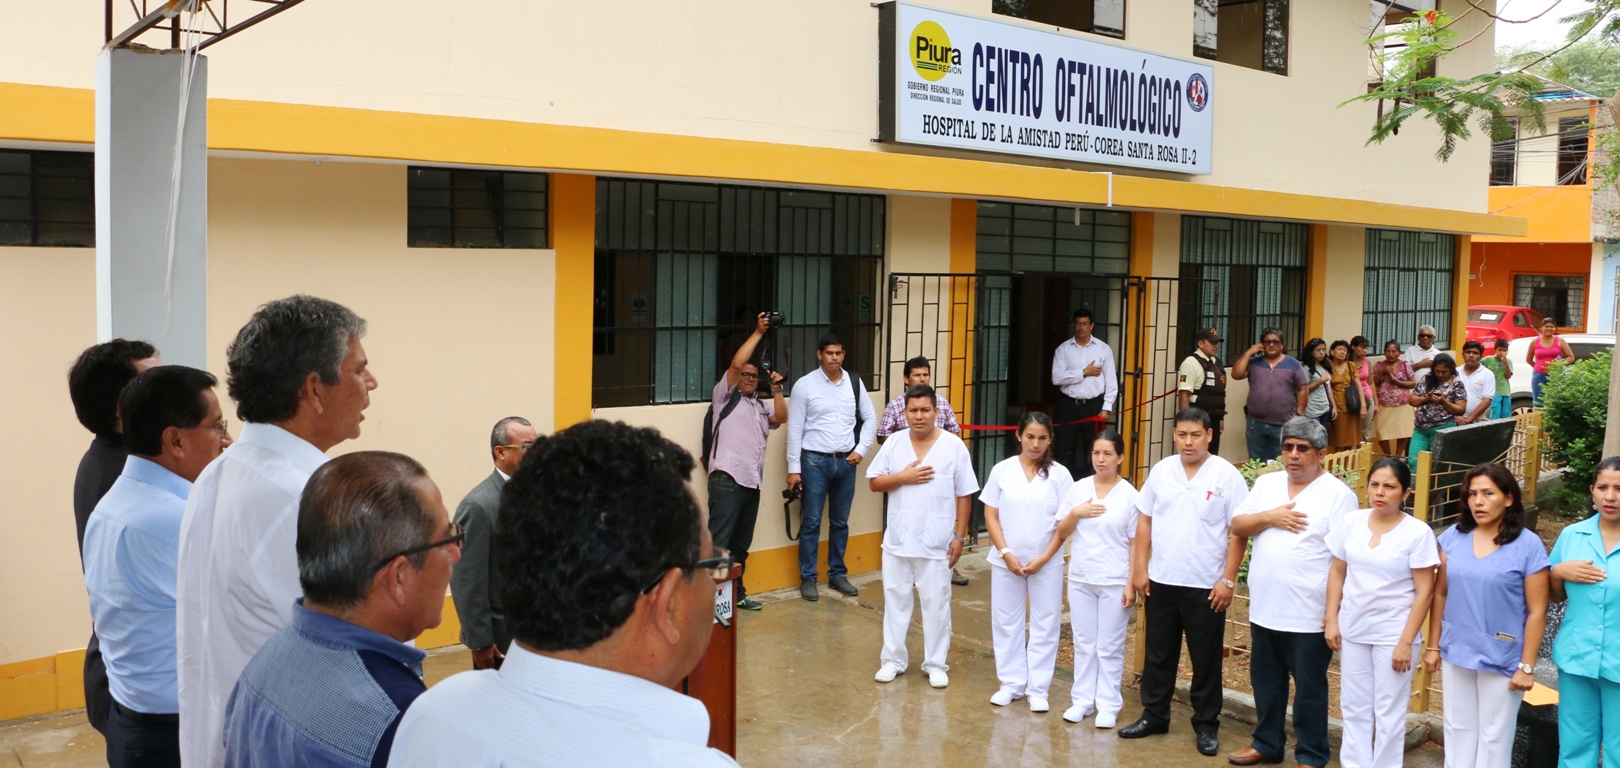 Piura tendrá un nuevo y avanzado Instituto Oftalmológico Regional